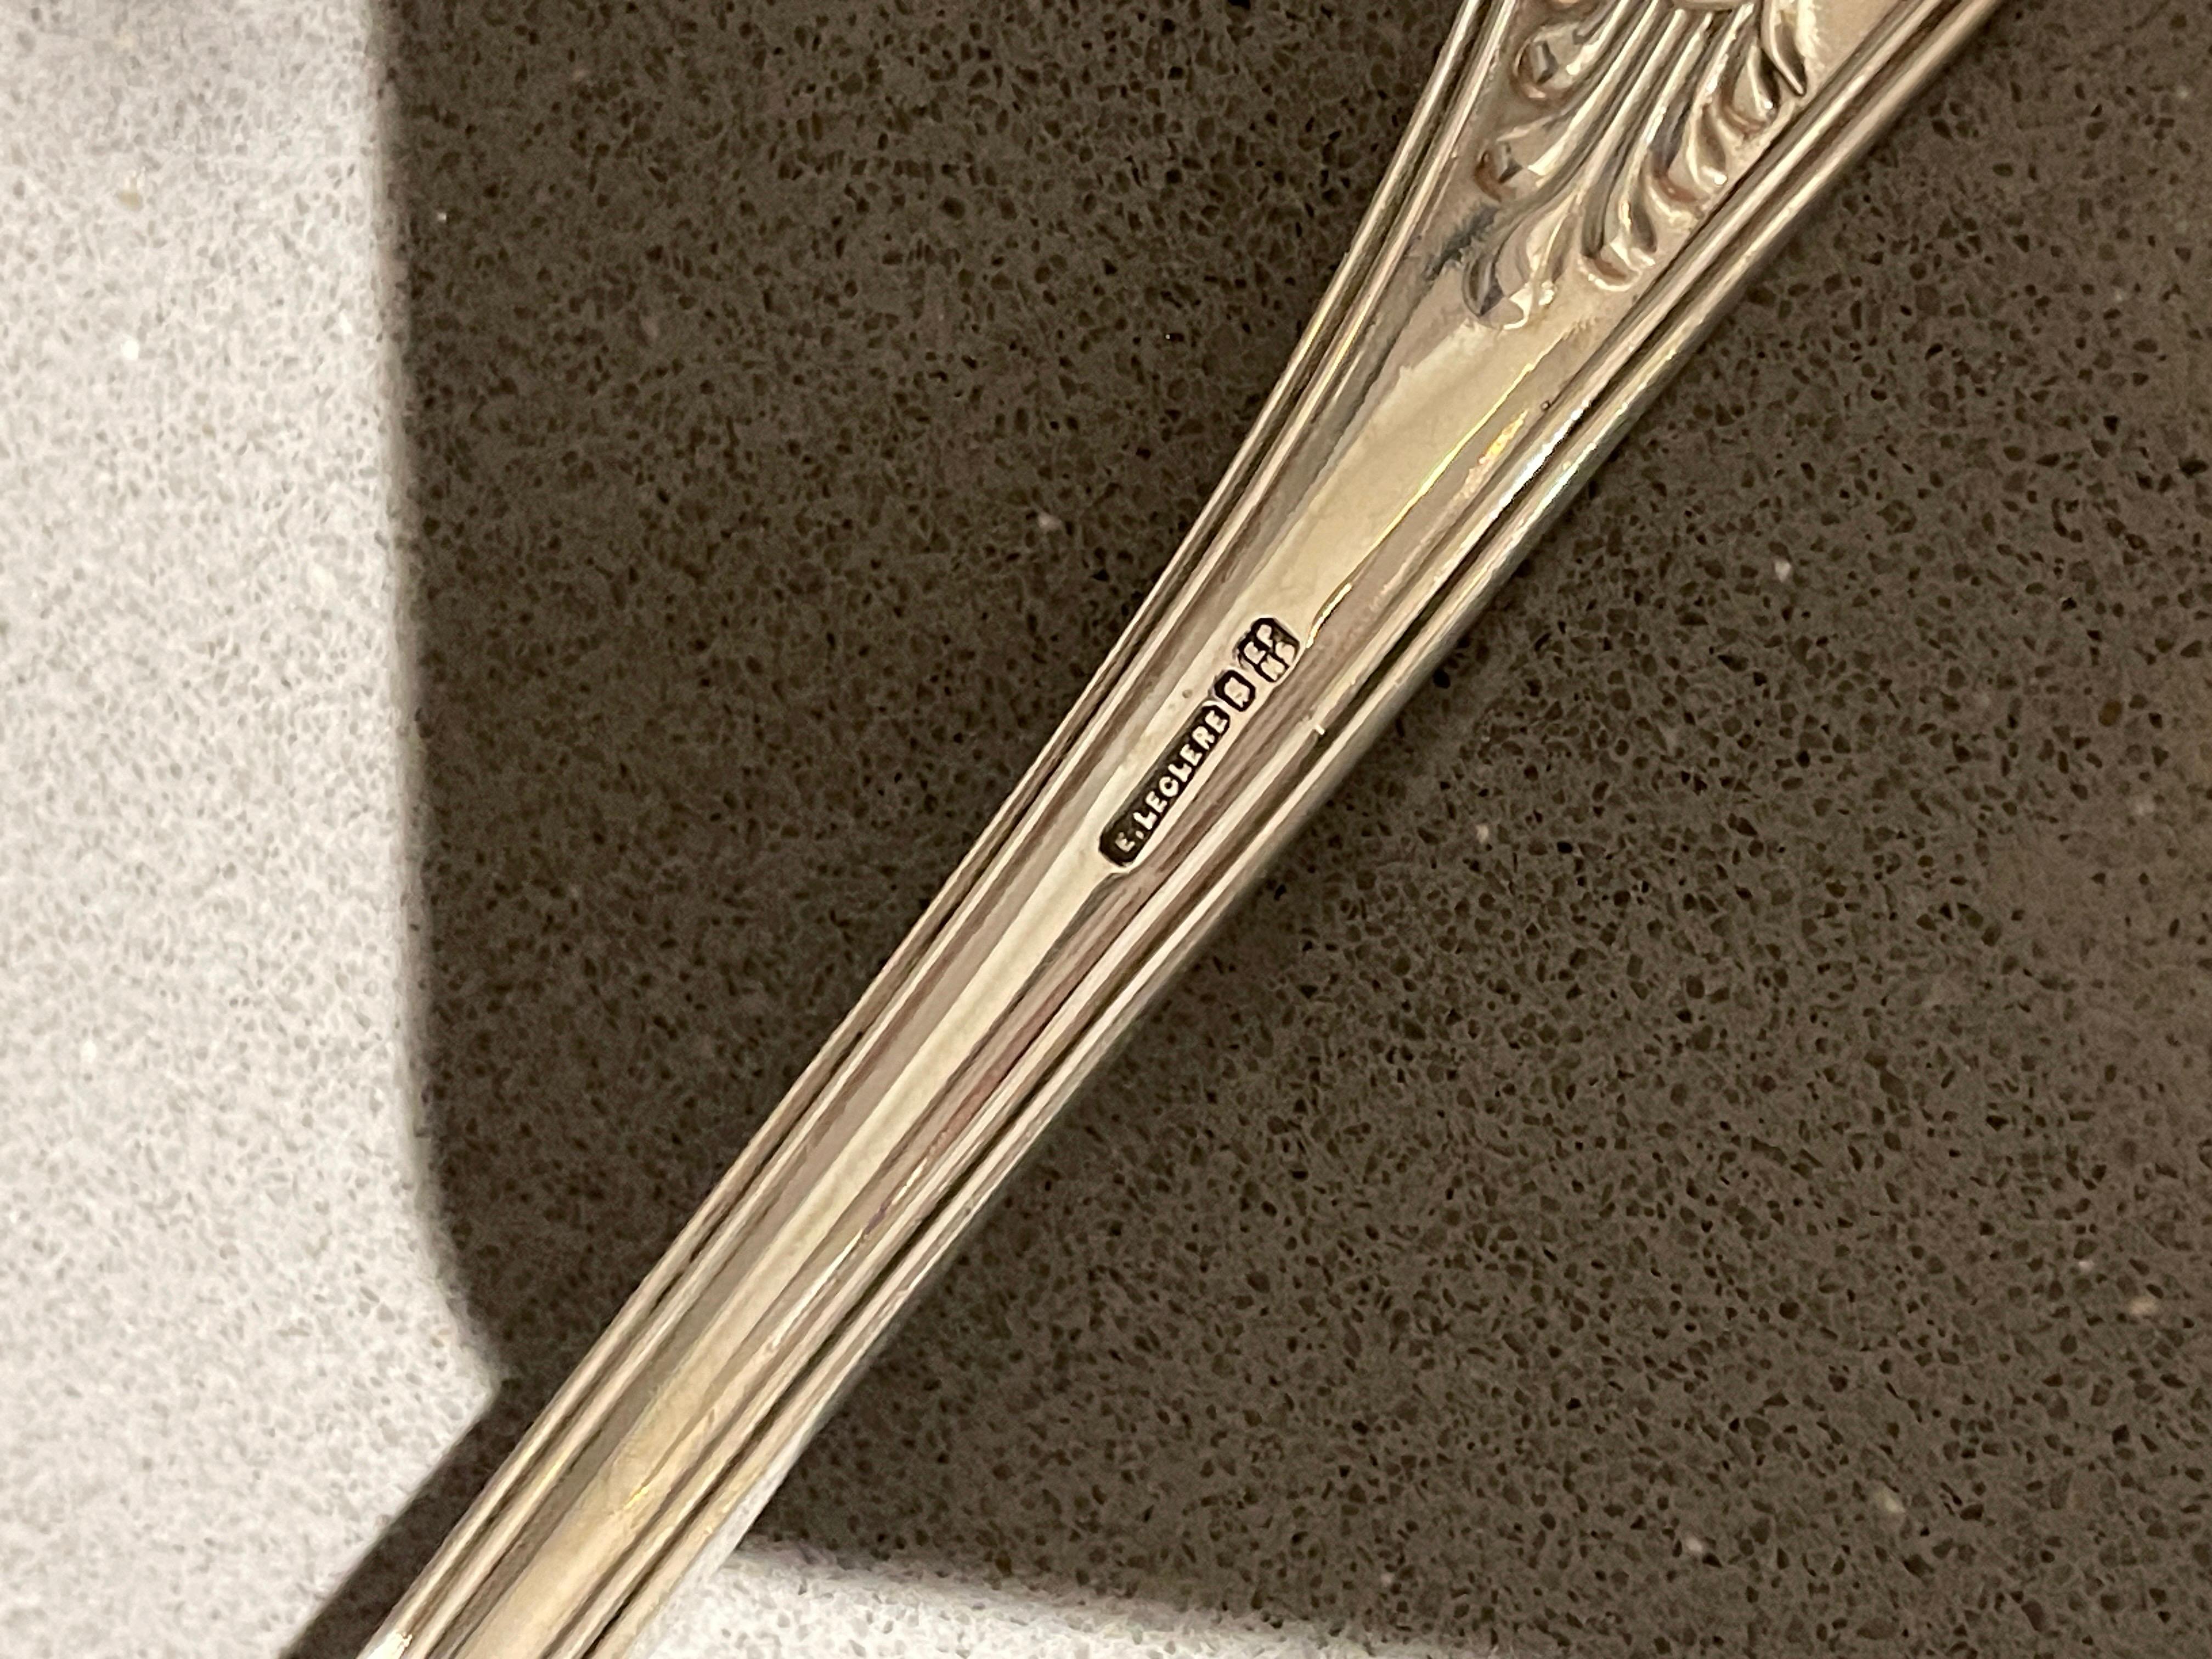 Mid-20th Century Antique Silver Ladle, Large Soup & Stew Ladles Engraved Decorative Art Nouveau